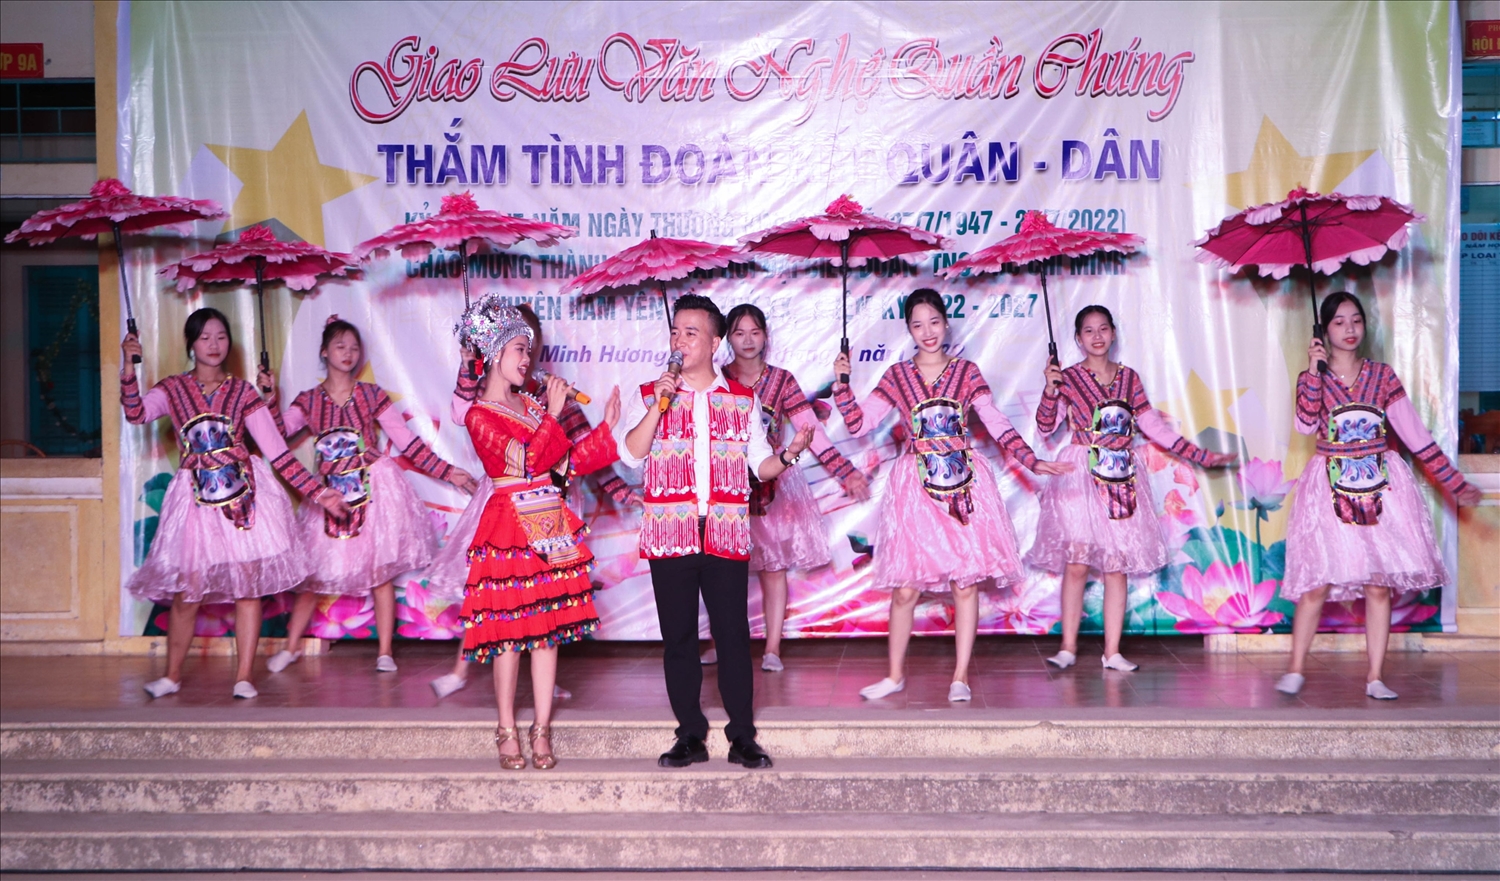 Diễn viên Trung tâm văn hóa, Truyền thông Thể thao huyện Hàm Yên (Tuyên Quang) biểu diễn ca khúc “Xuống chợ" của NSUT Vương Vình